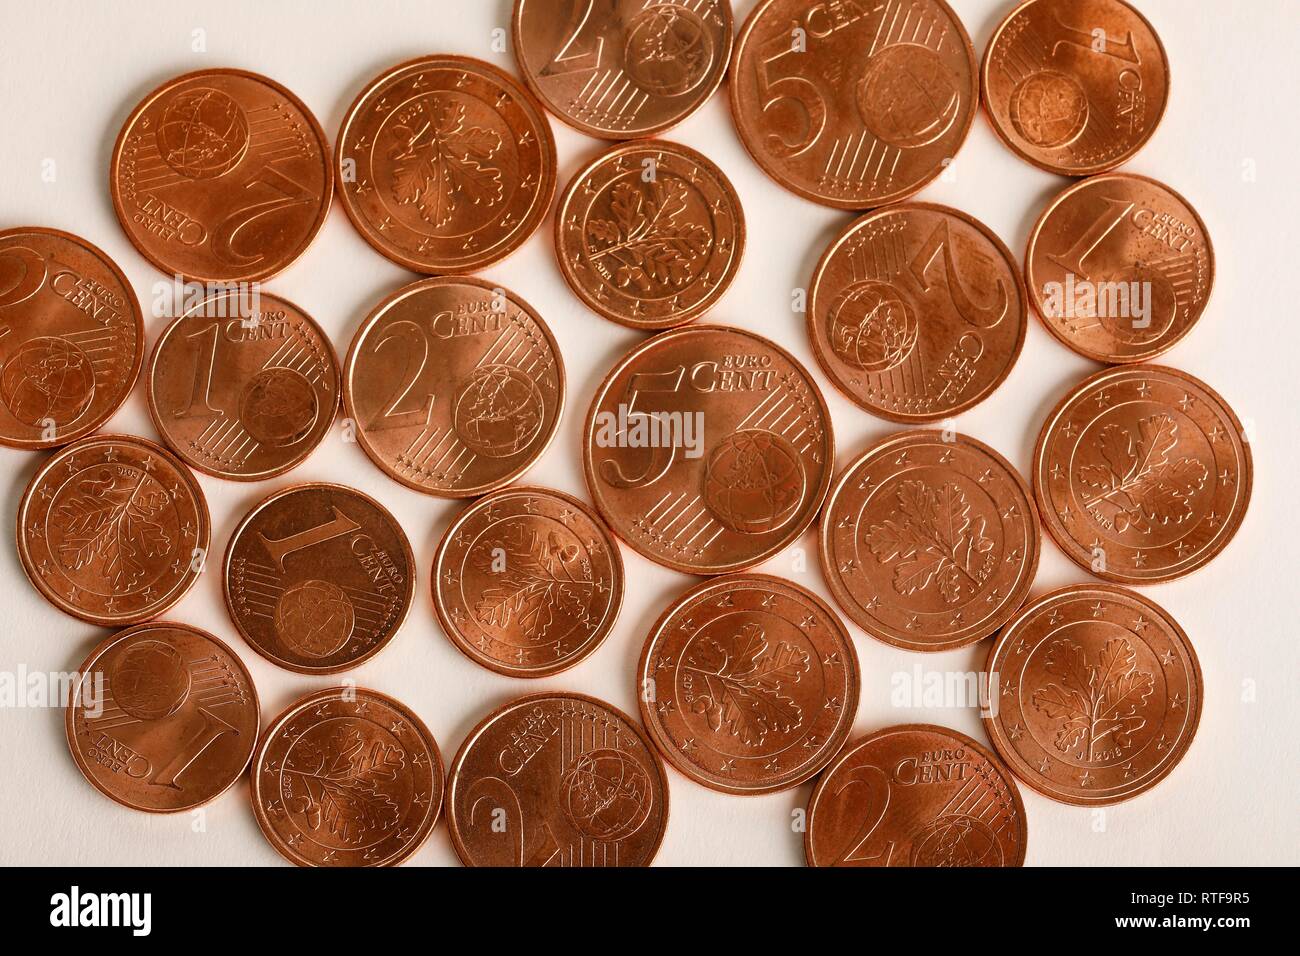 Euro-Cent monedas, 1%, 2% y 5 céntimos, Alemania Foto de stock